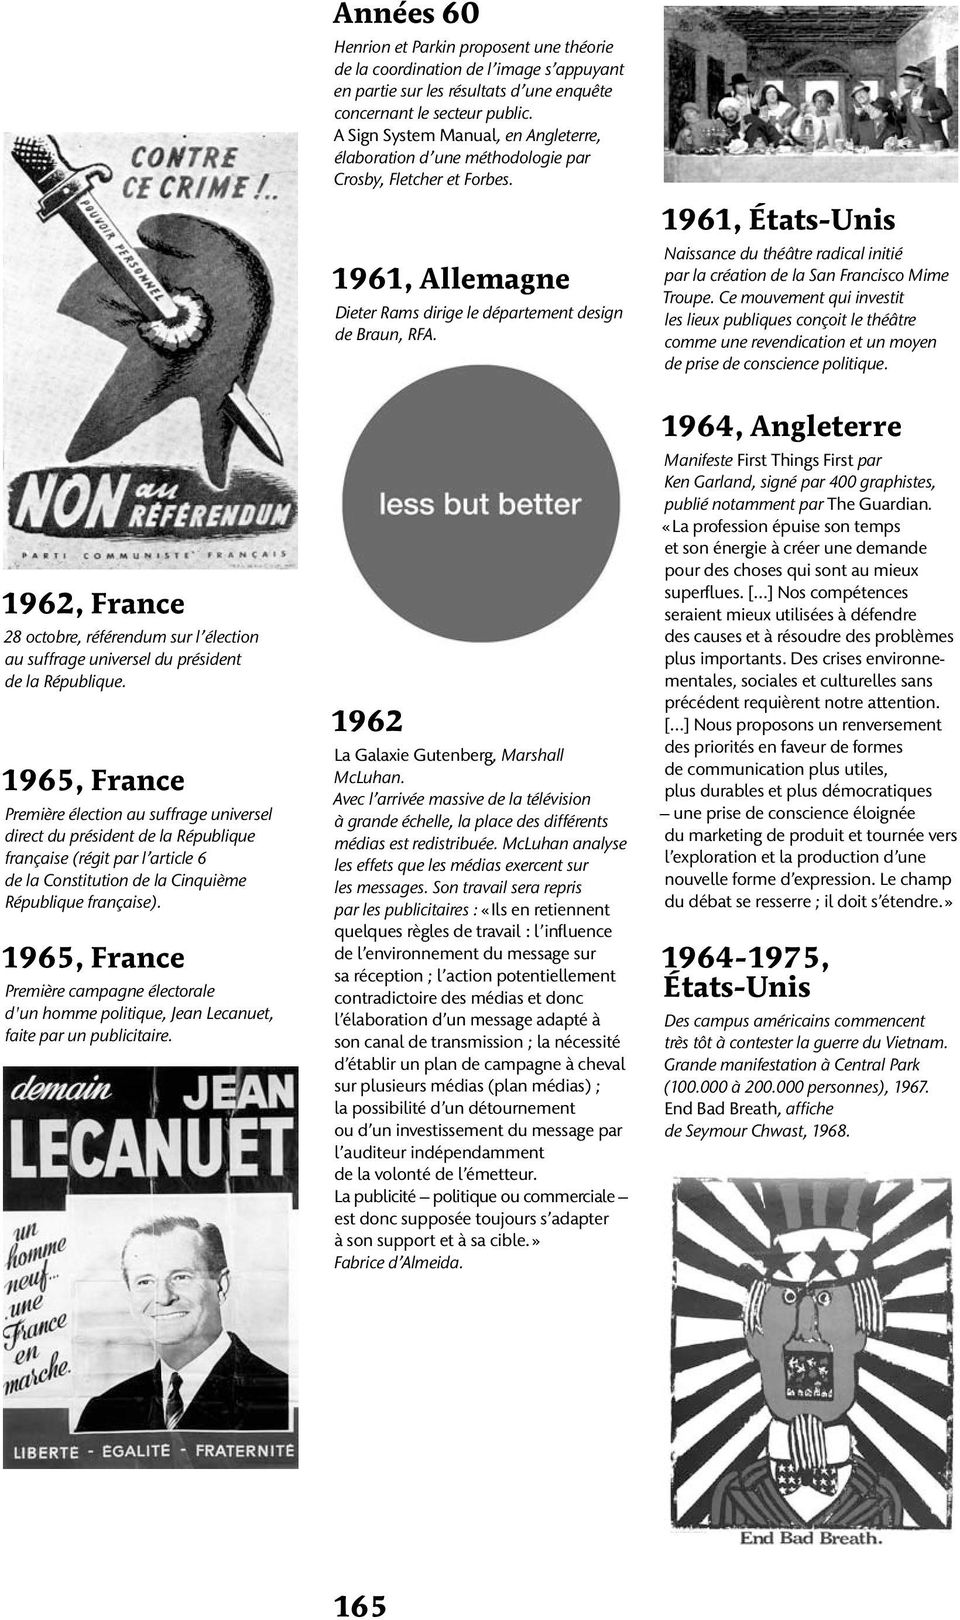 1965, France Première campagne électorale d'un homme politique, Jean Lecanuet, faite par un publicitaire.